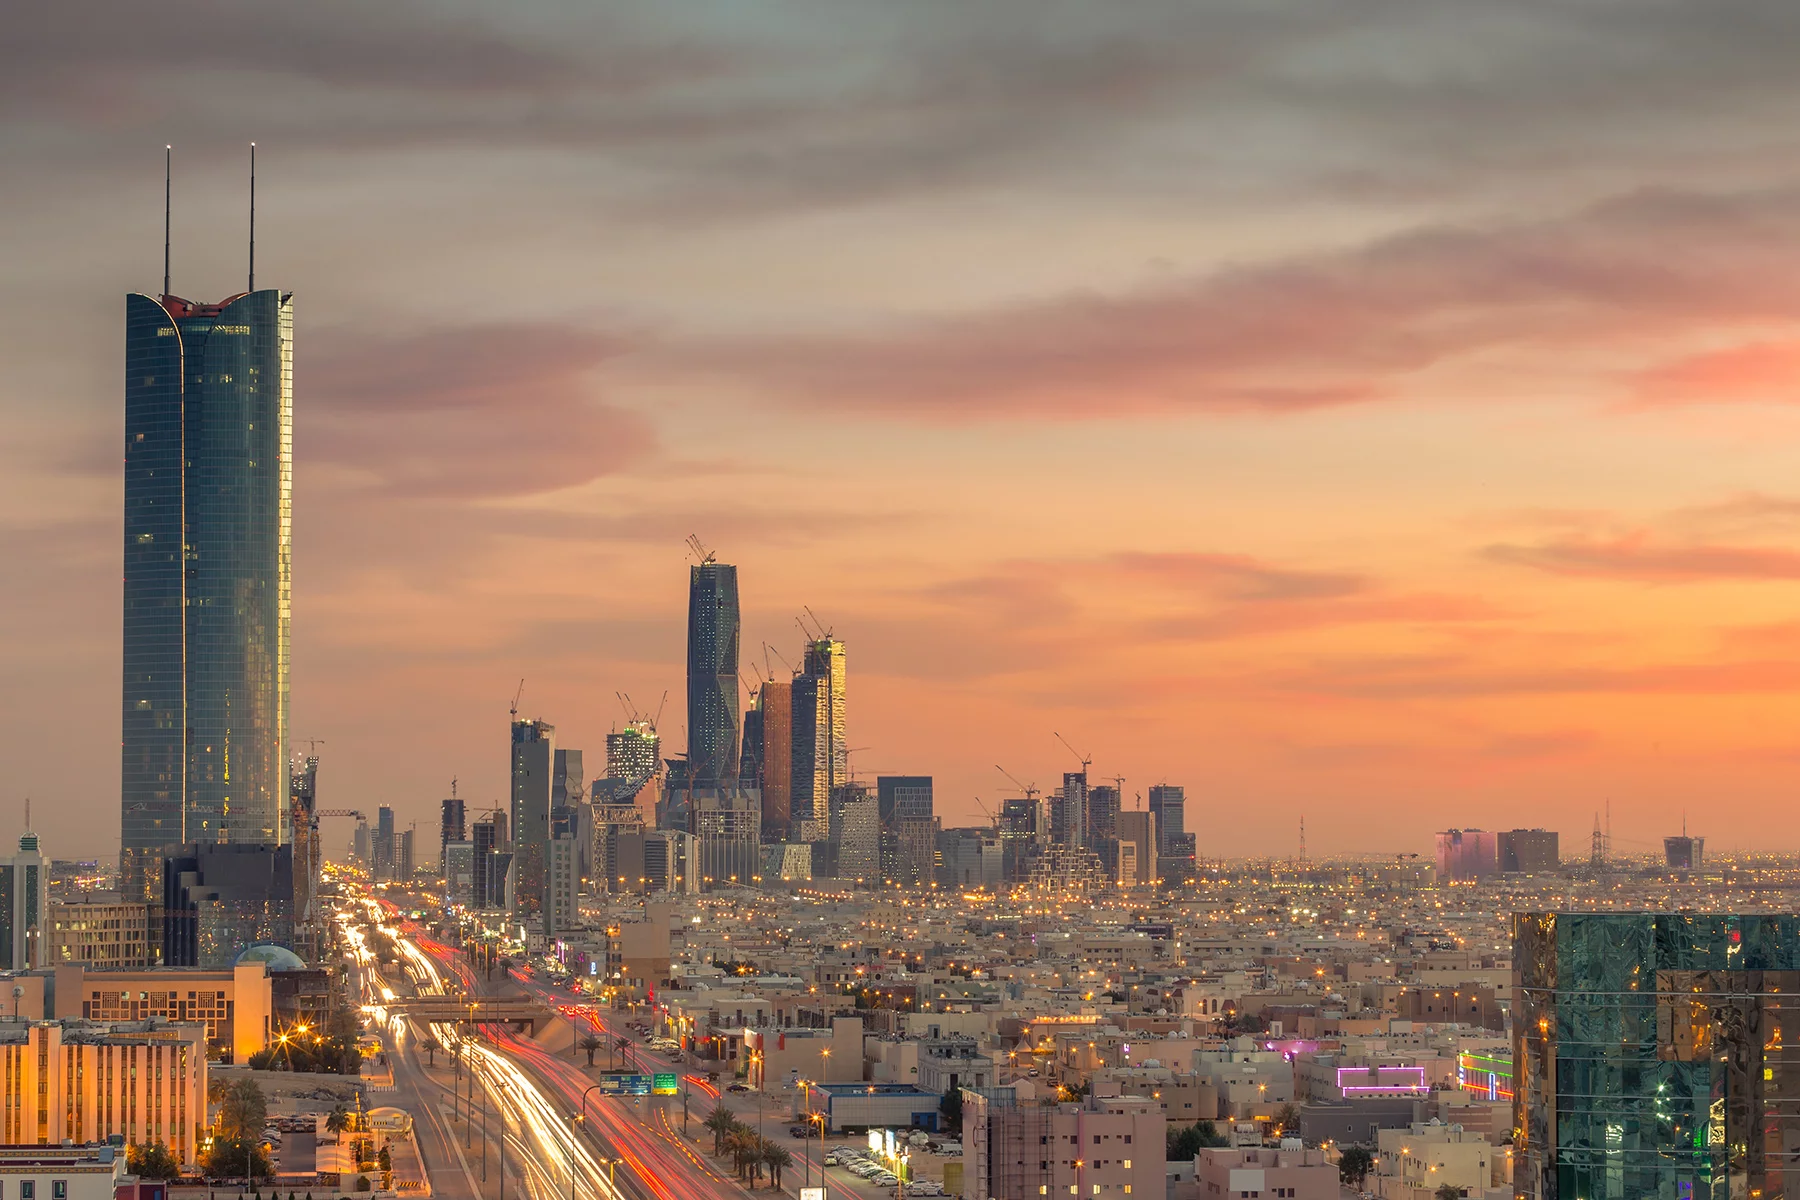 Riyadh skyline at sunset